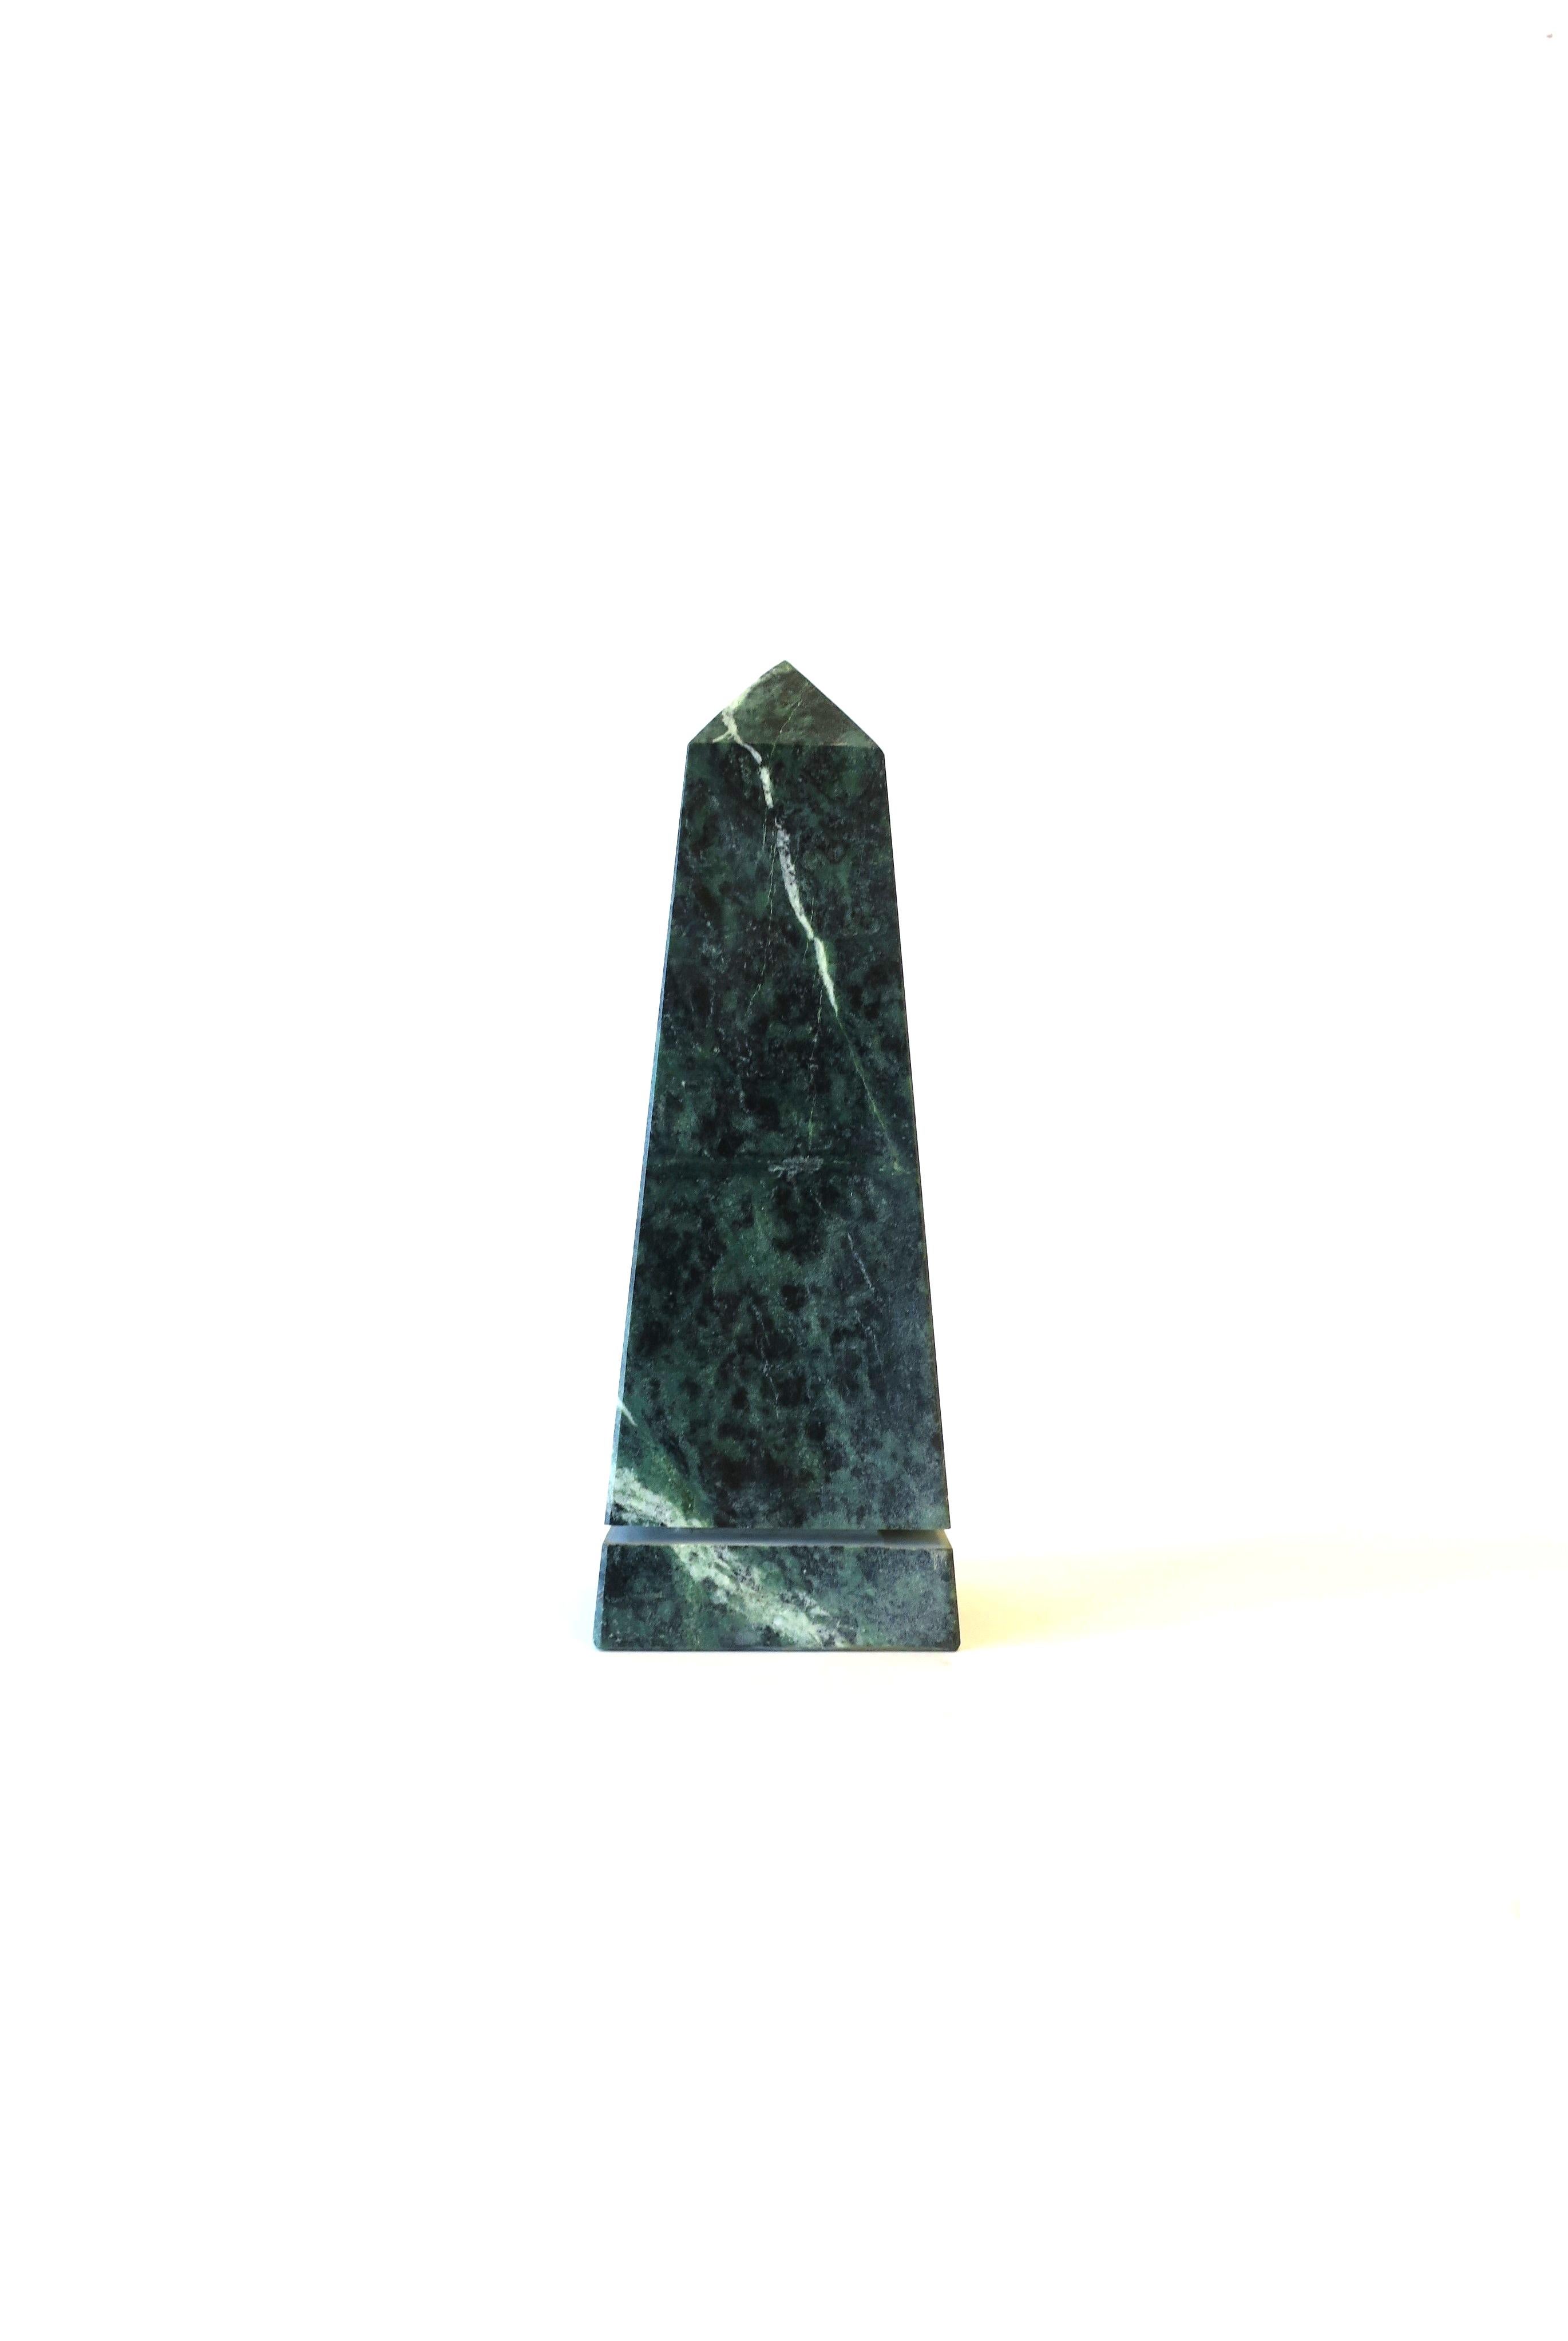 Eine italienische moderne oder postmoderne Skulptur aus dunkelgrünem Marmor aus den 70er Jahren, CIRCA 1970, Italien. Der Obelisk ist grün mit weißer Äderung. Sehr guter Zustand, wie auf den Bildern zu sehen. Keine Chips festgestellt. Abmessungen: